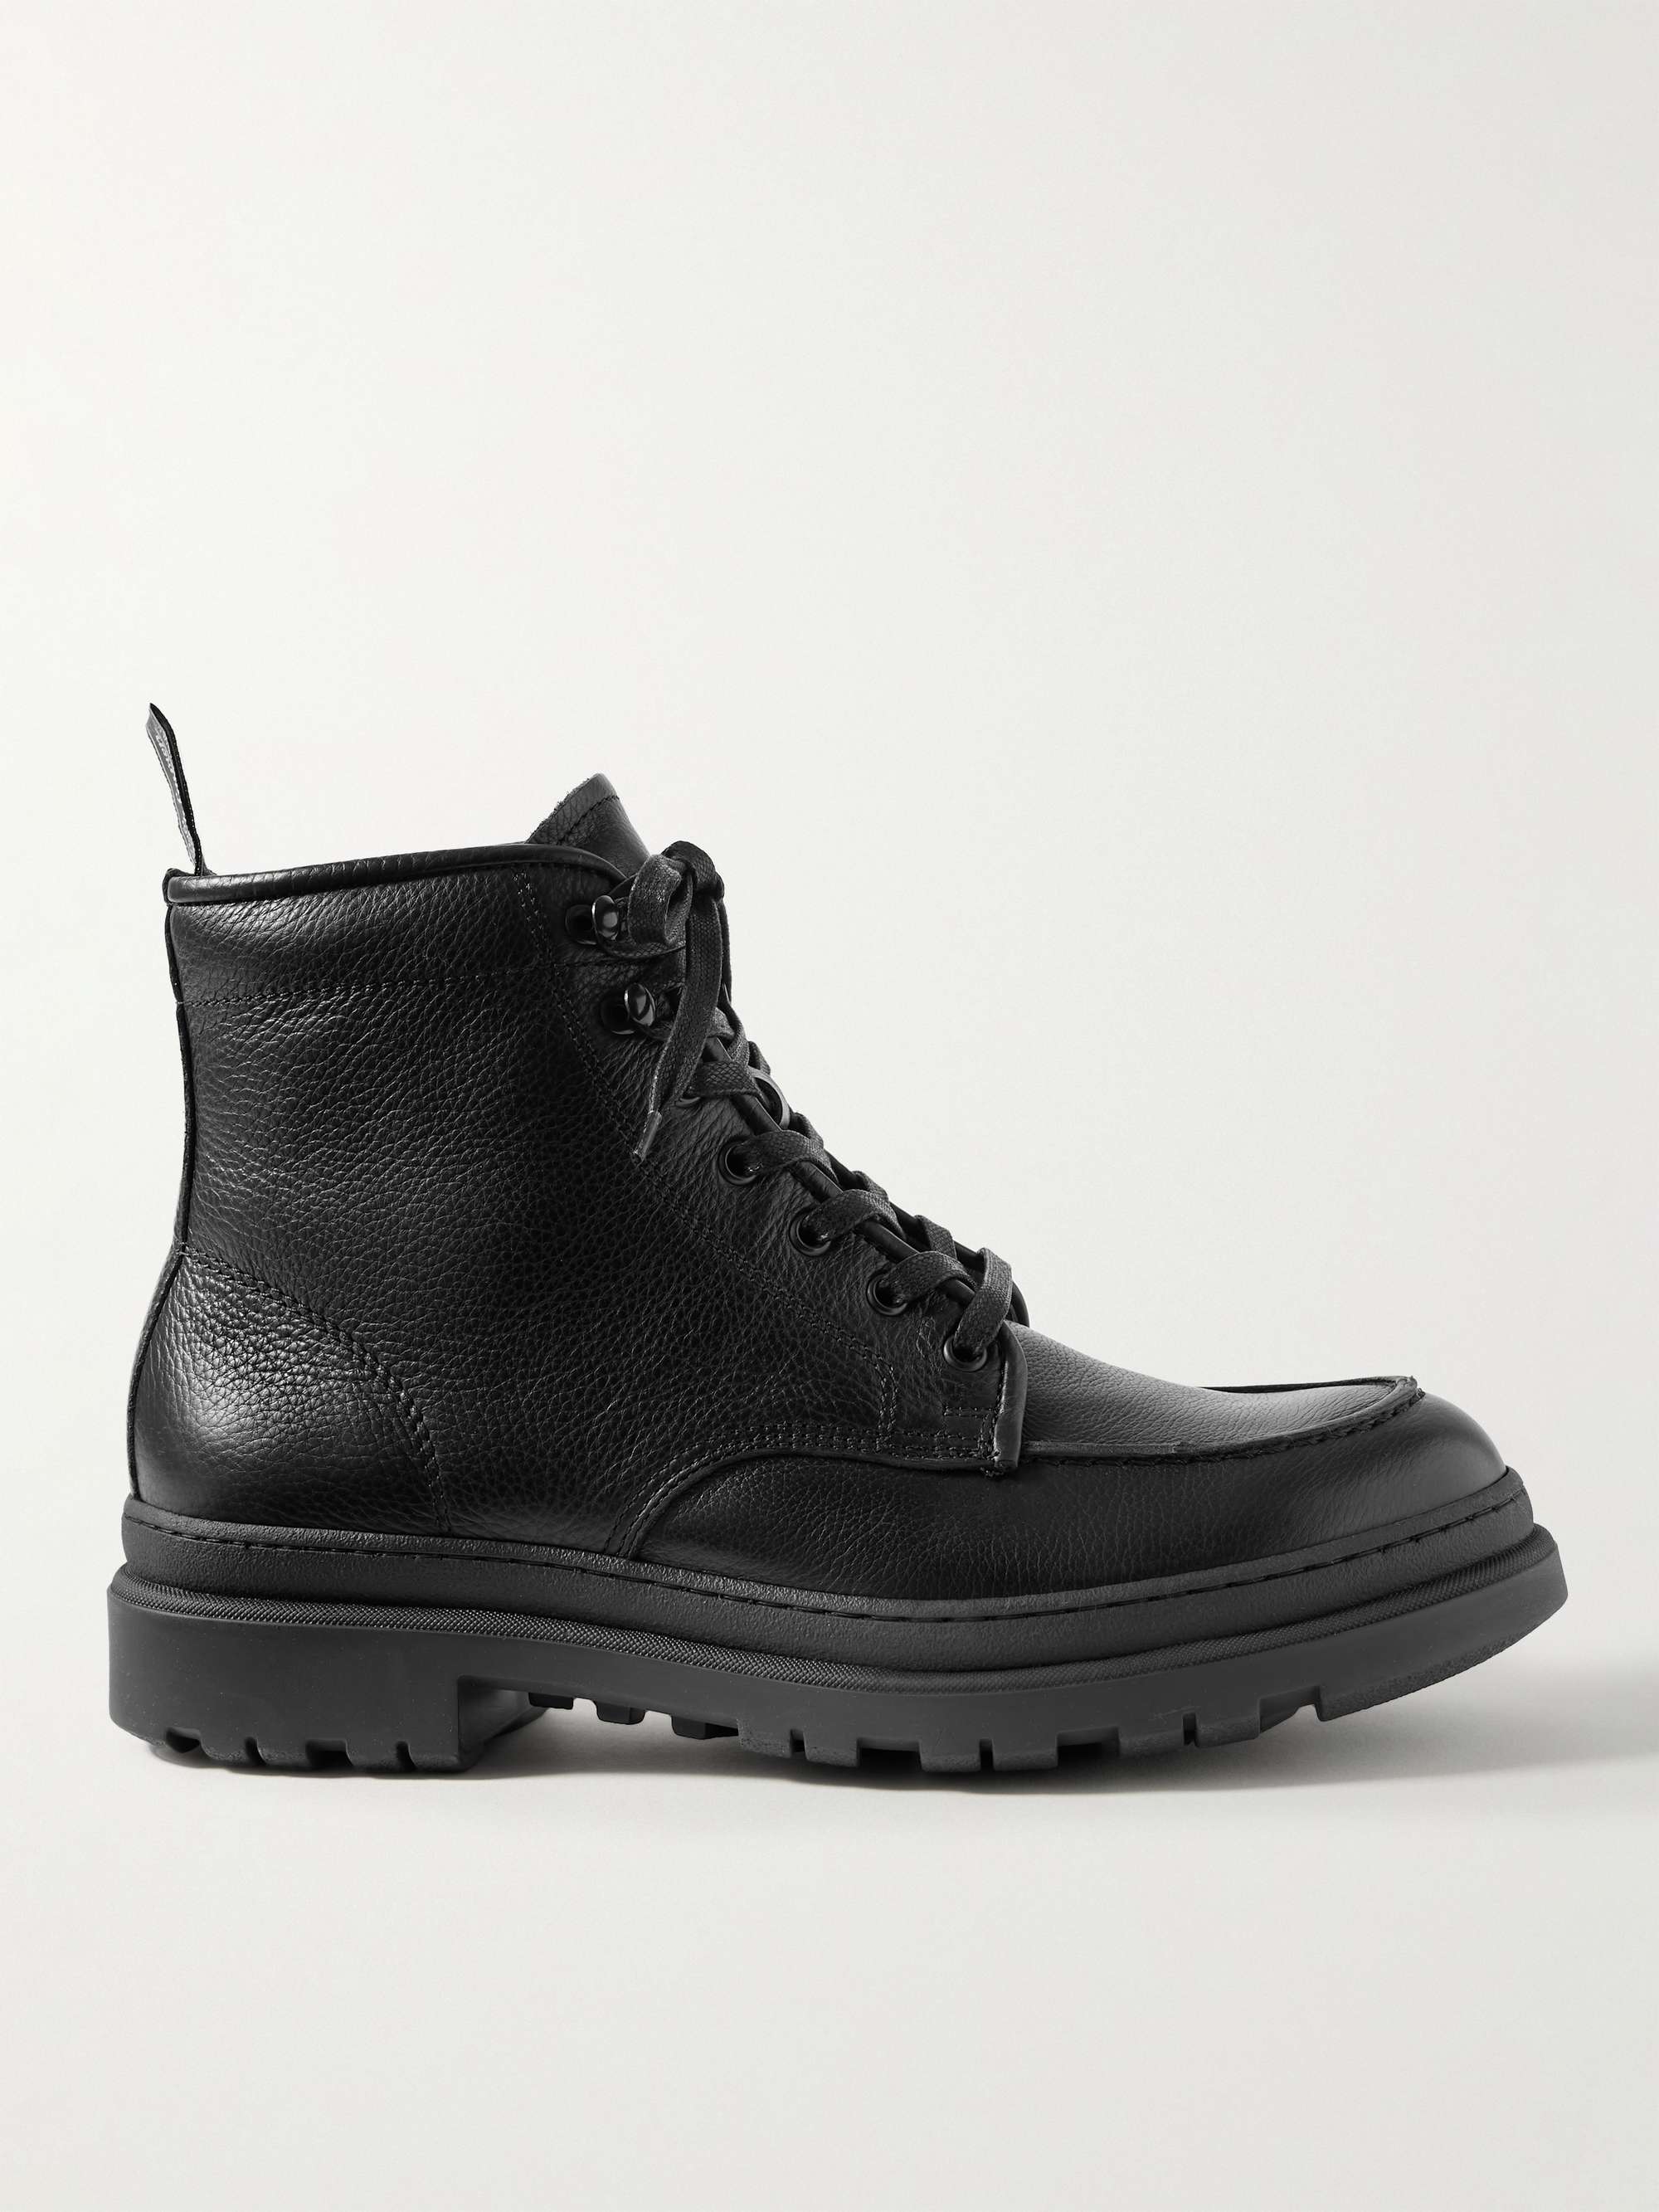 POLO RALPH LAUREN Full-Grain Leather Boots for Men | MR PORTER